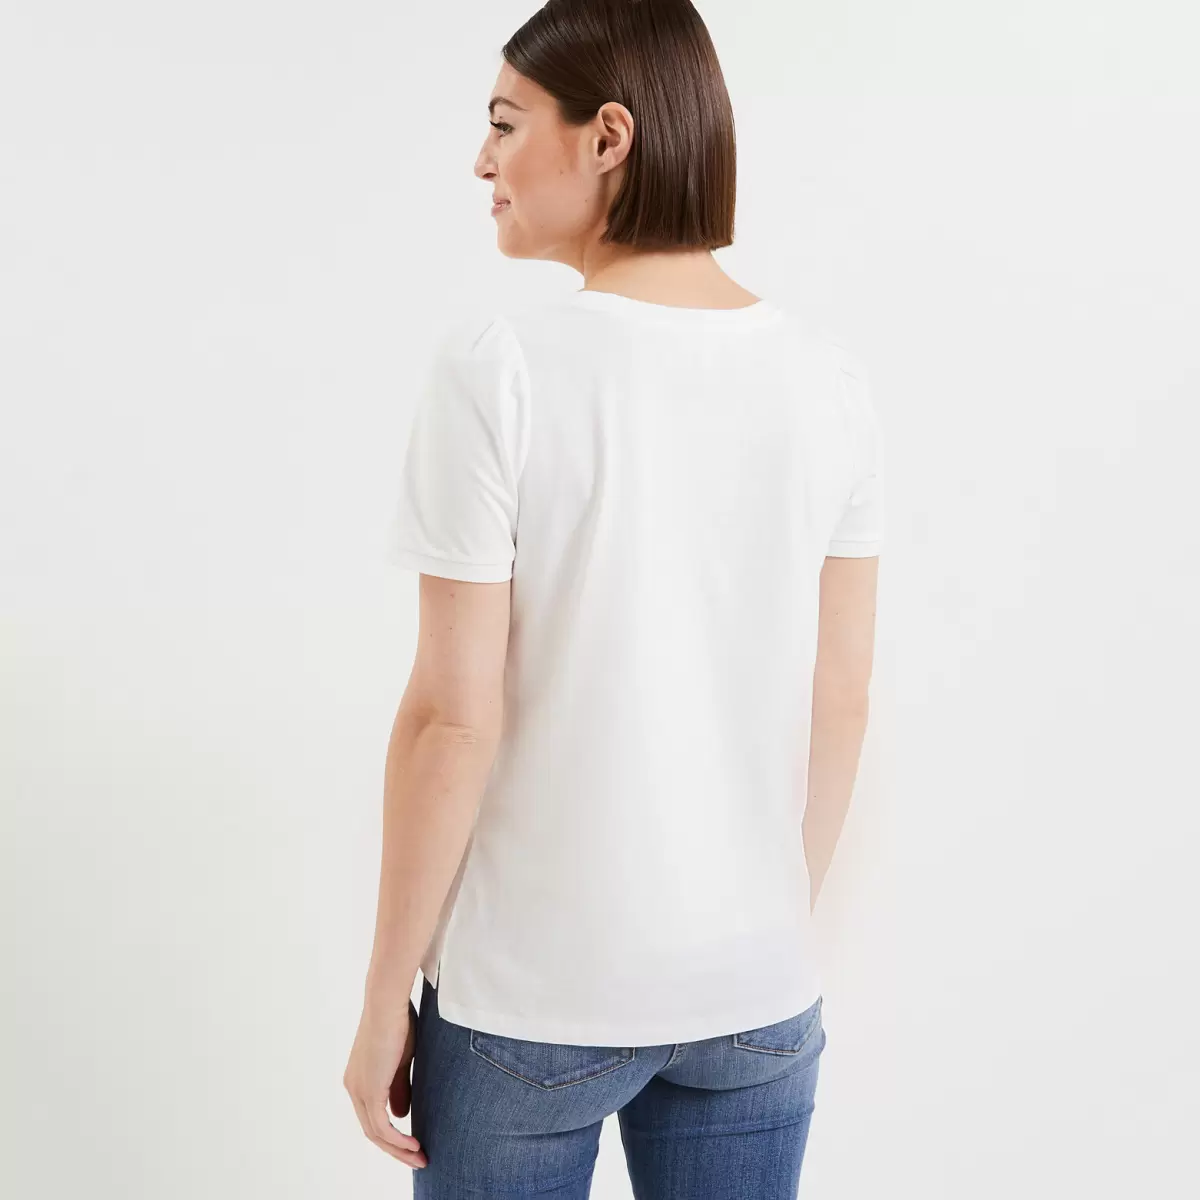 Tshirt Message Femme Femme T-Shirts & Tops Prix Promotionnel Blanc Casse Grain De Malic - 1